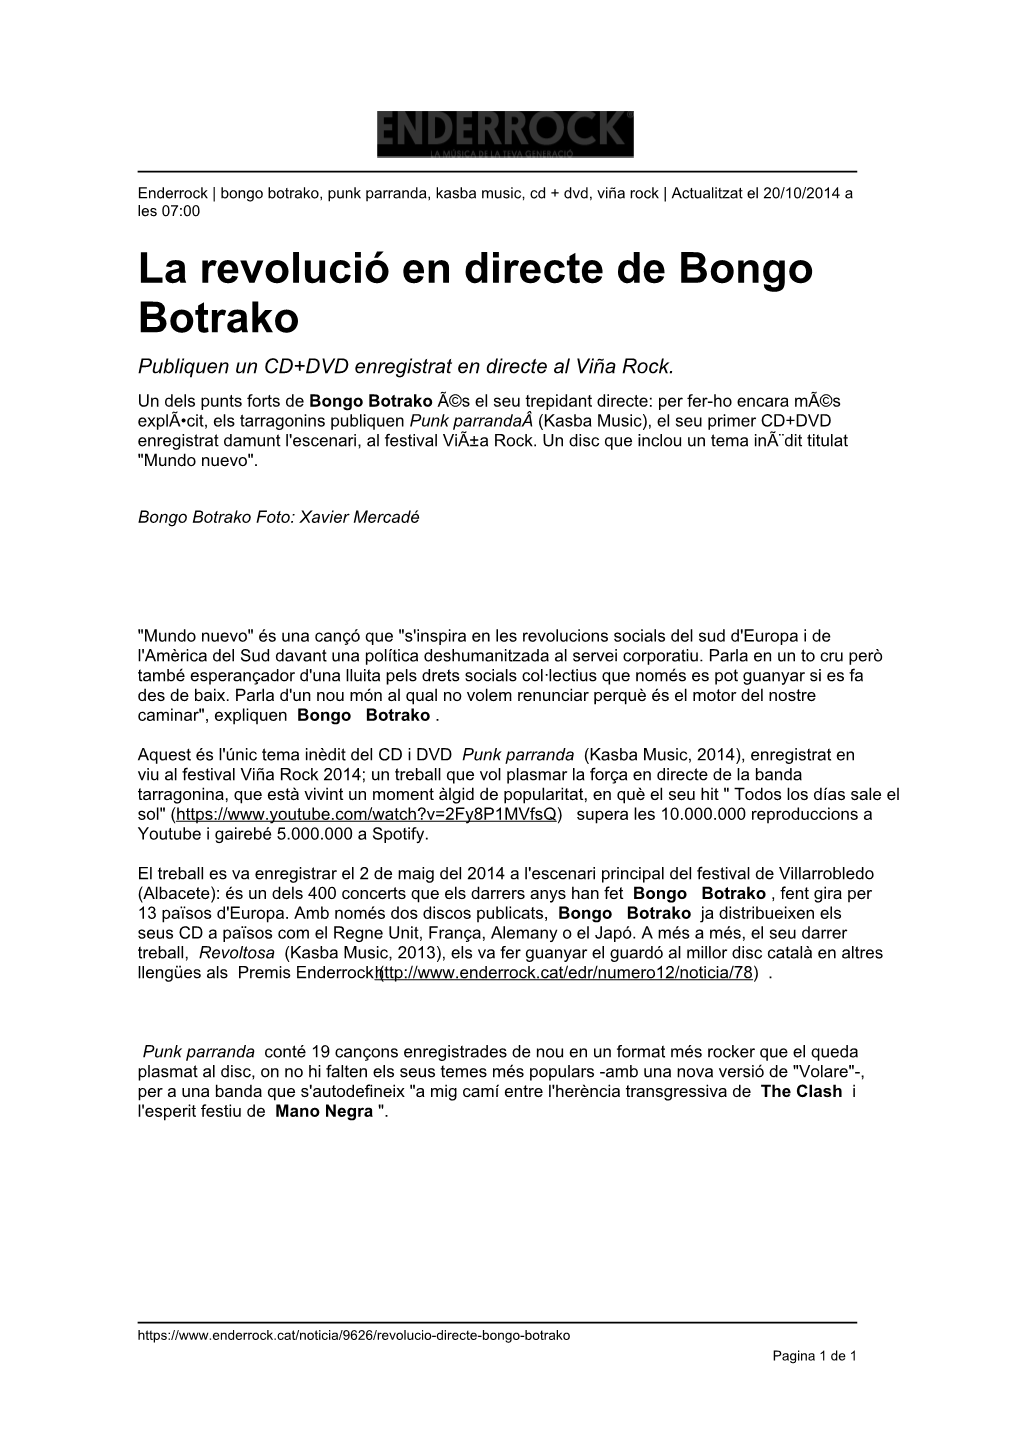 La Revolució En Directe De Bongo Botrako Publiquen Un CD+DVD Enregistrat En Directe Al Viña Rock